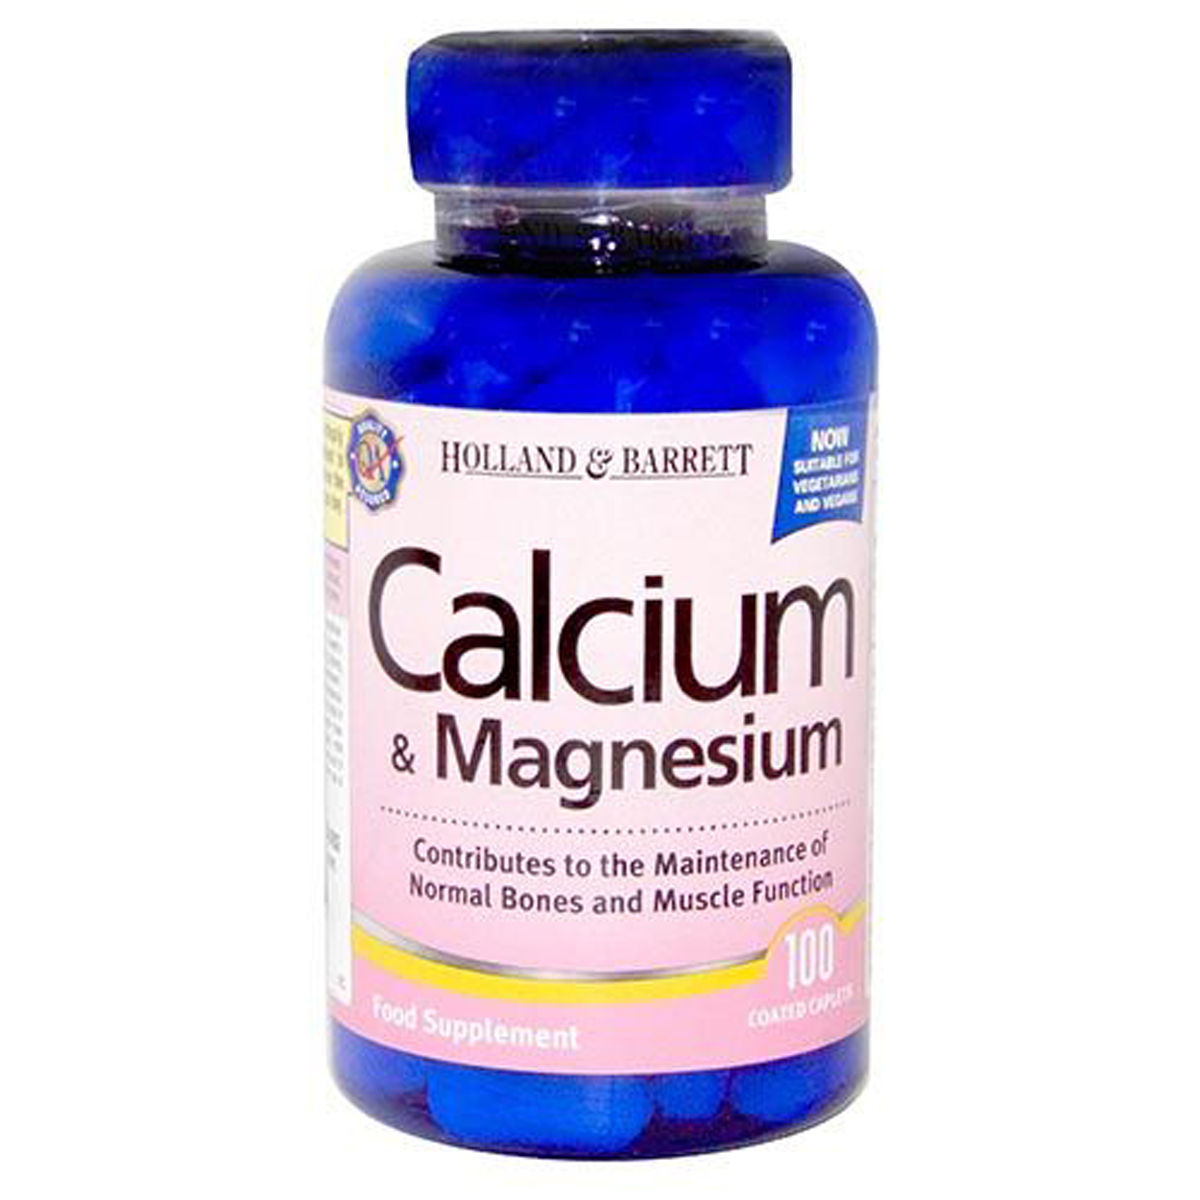 Holland & Barrett Calcium & Magnesium, 100 Capsules, Pack of 1 